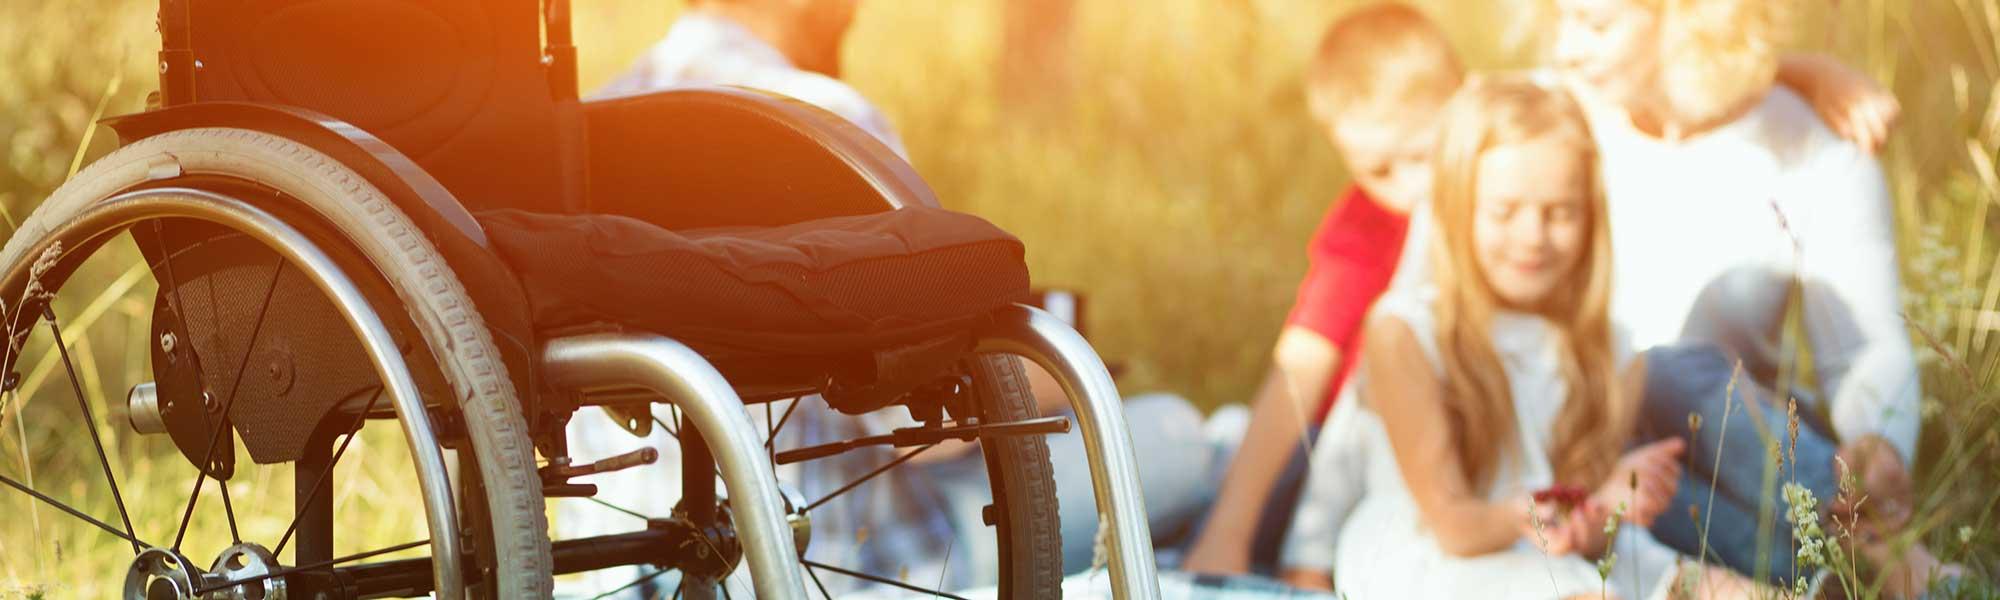 Aidants d’une personne handicapée : quels congés pour souffler ?